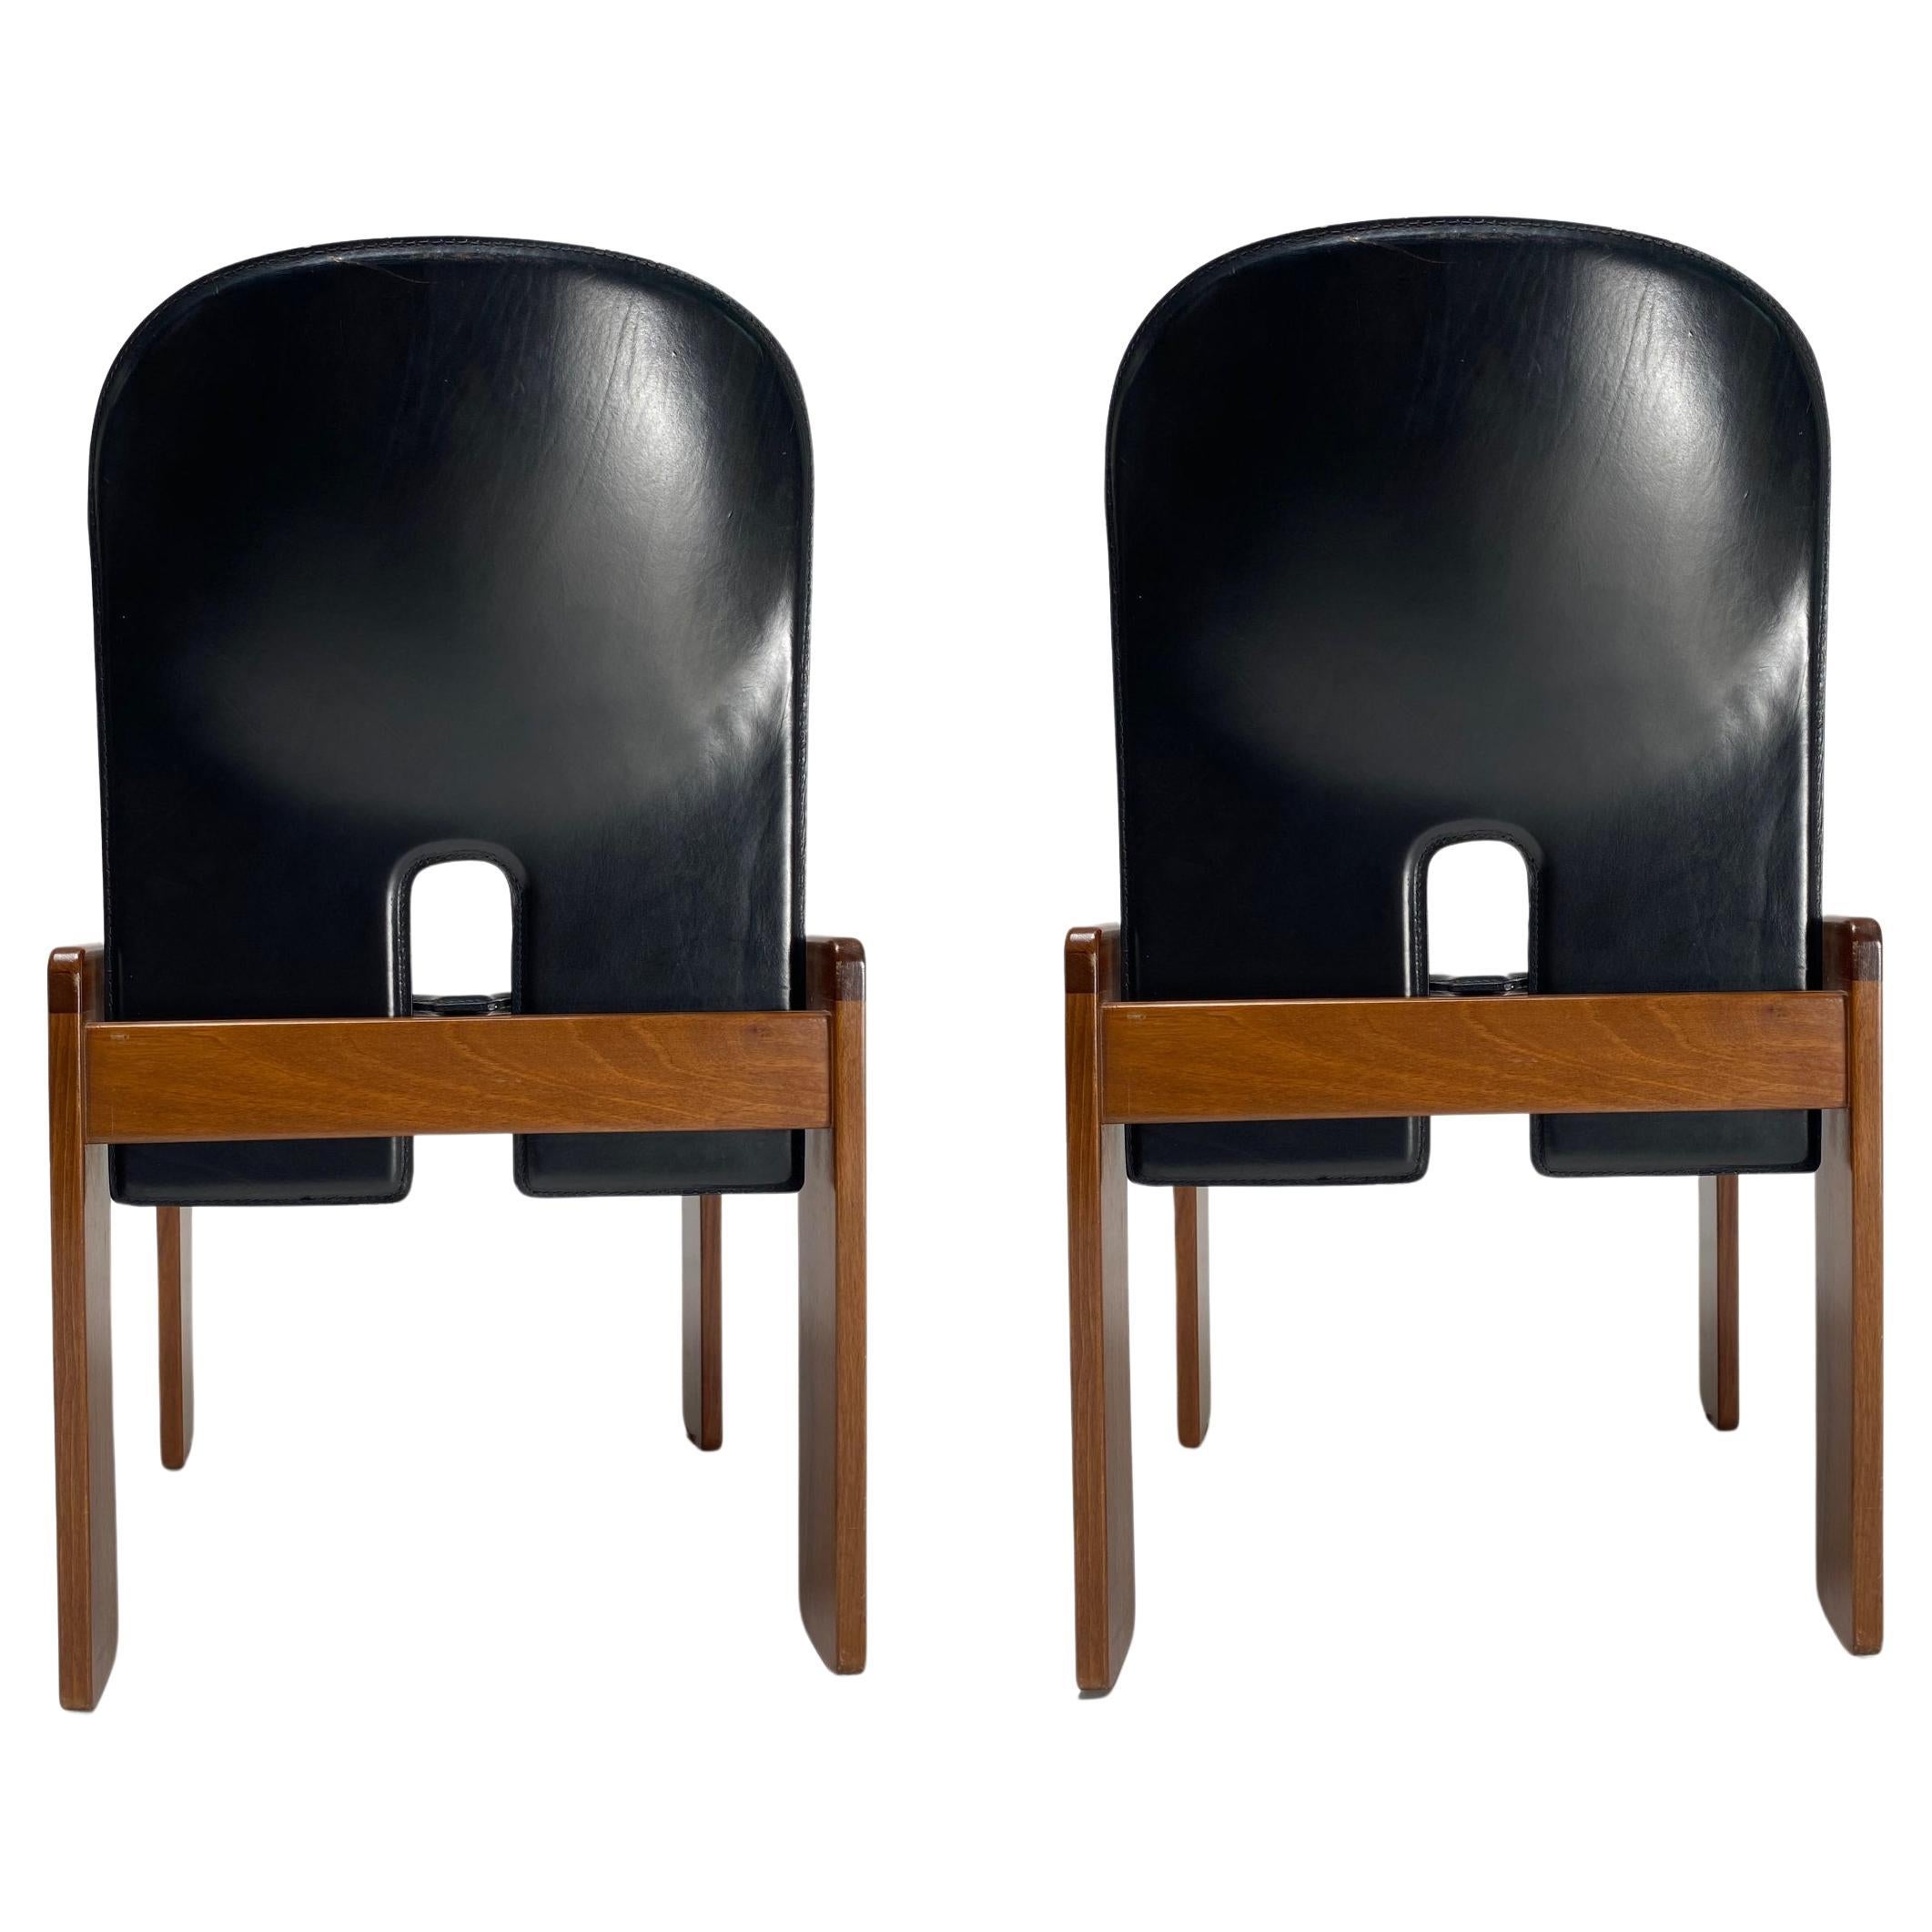 2 Stühle aus schwarzem Leder "121" von Tobia Scarpa für Cassina, Italien, 1967